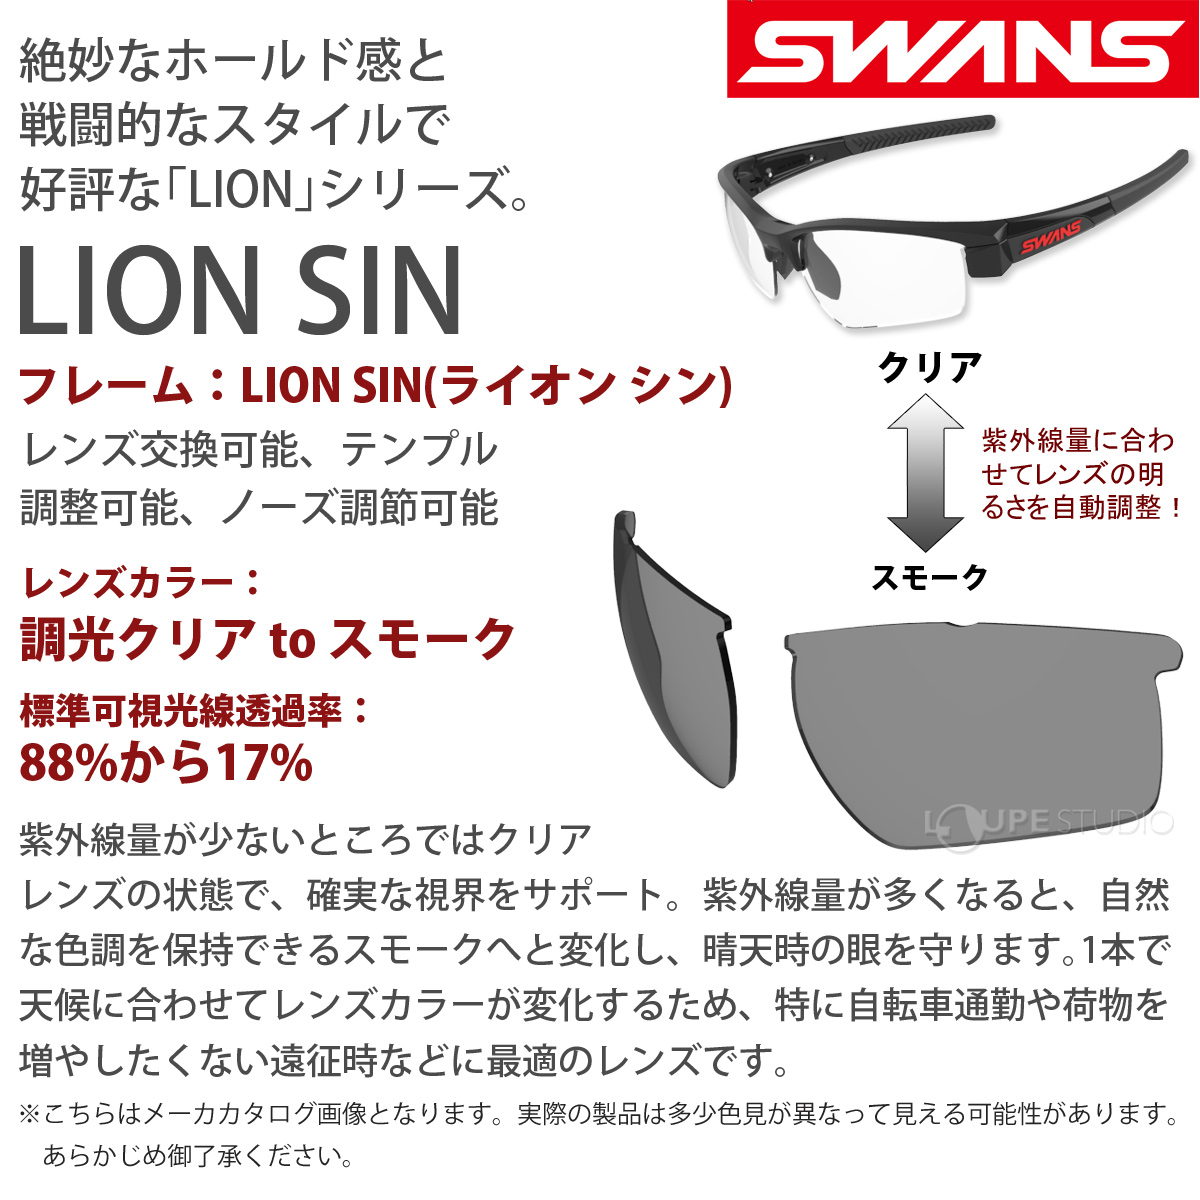 【色: 0167 MEBL】SWANS(スワンズ) スポーツサングラス ライオン